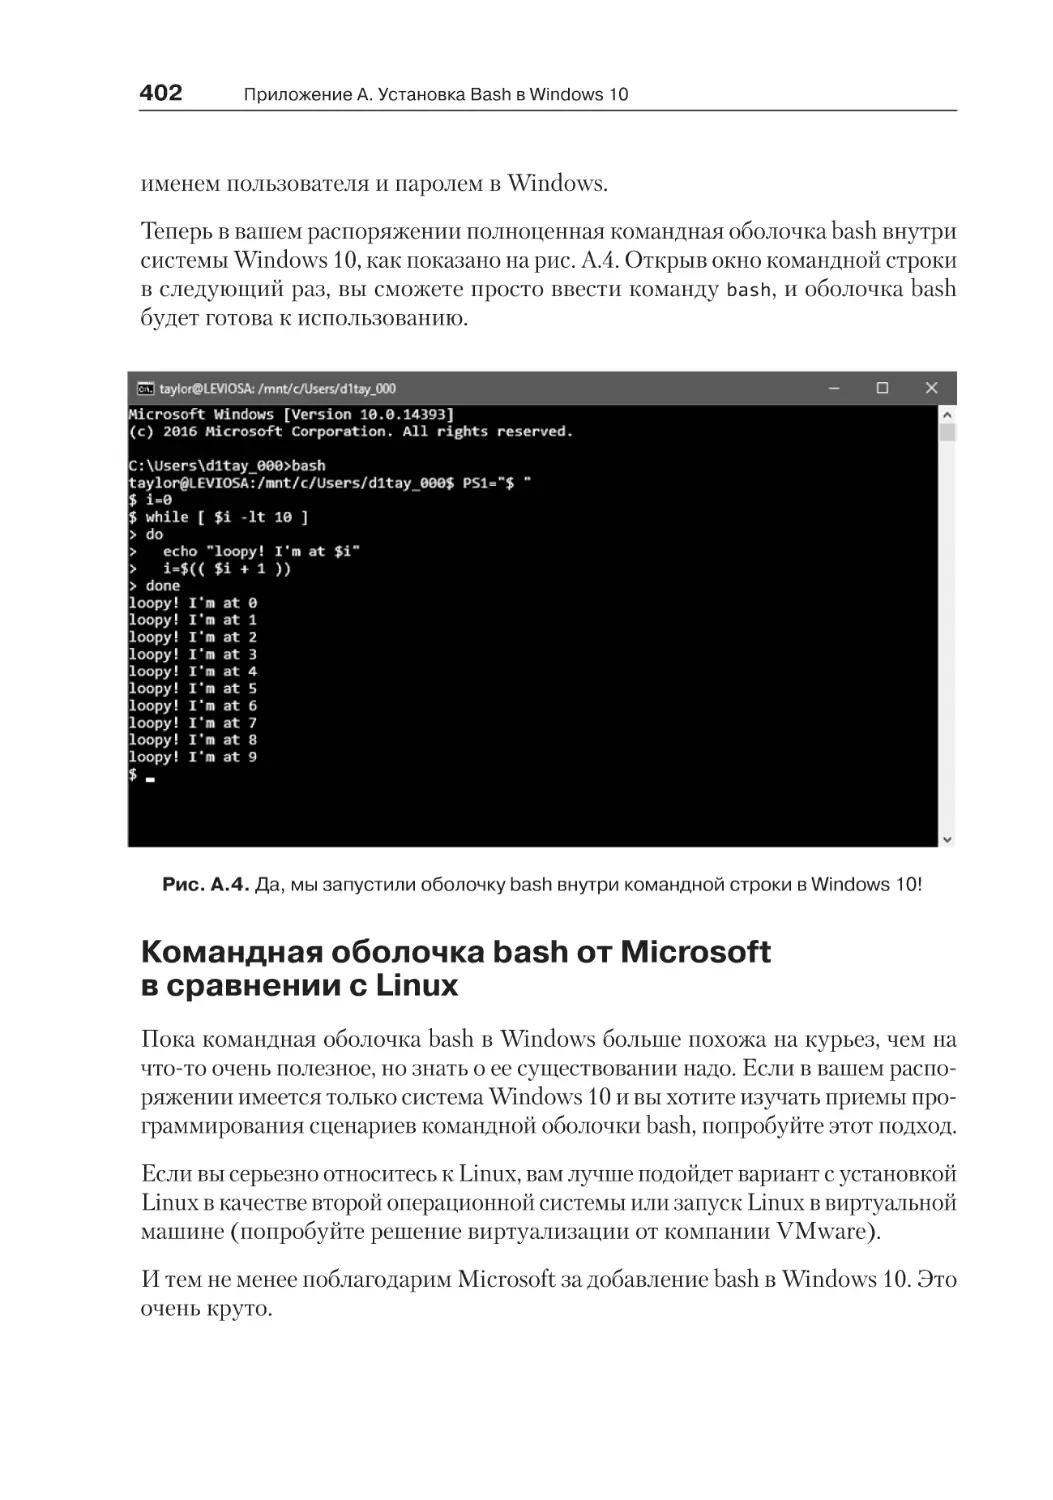 Командная оболочка bash от Microsoft в сравнении с Linux